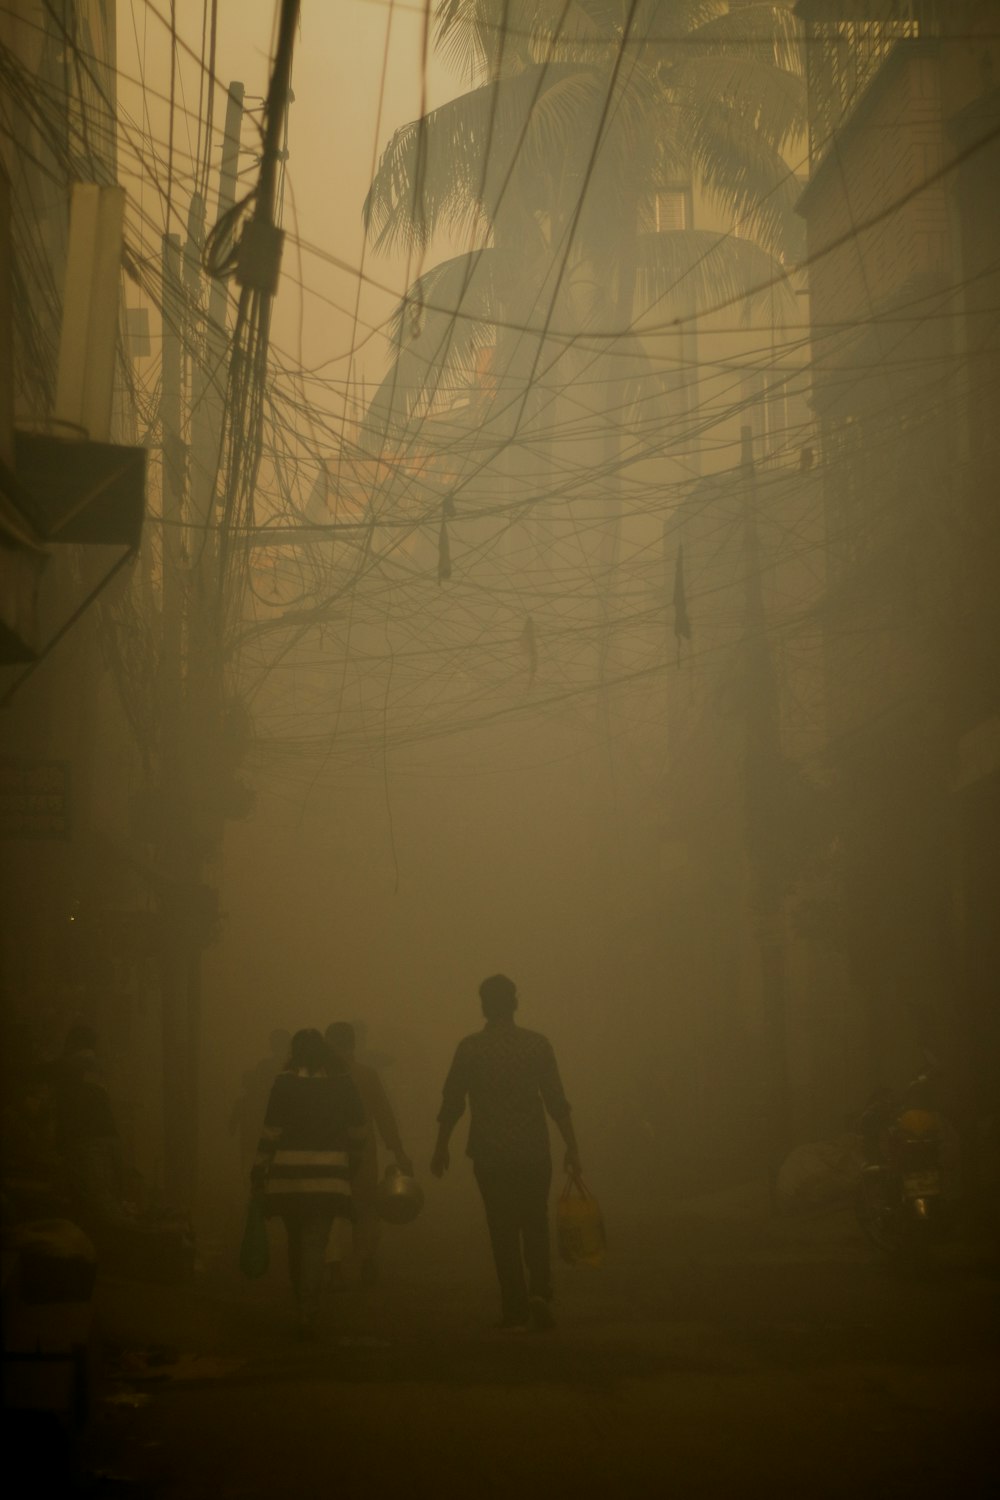 Un couple de personnes marchant dans une rue par une journée brumeuse